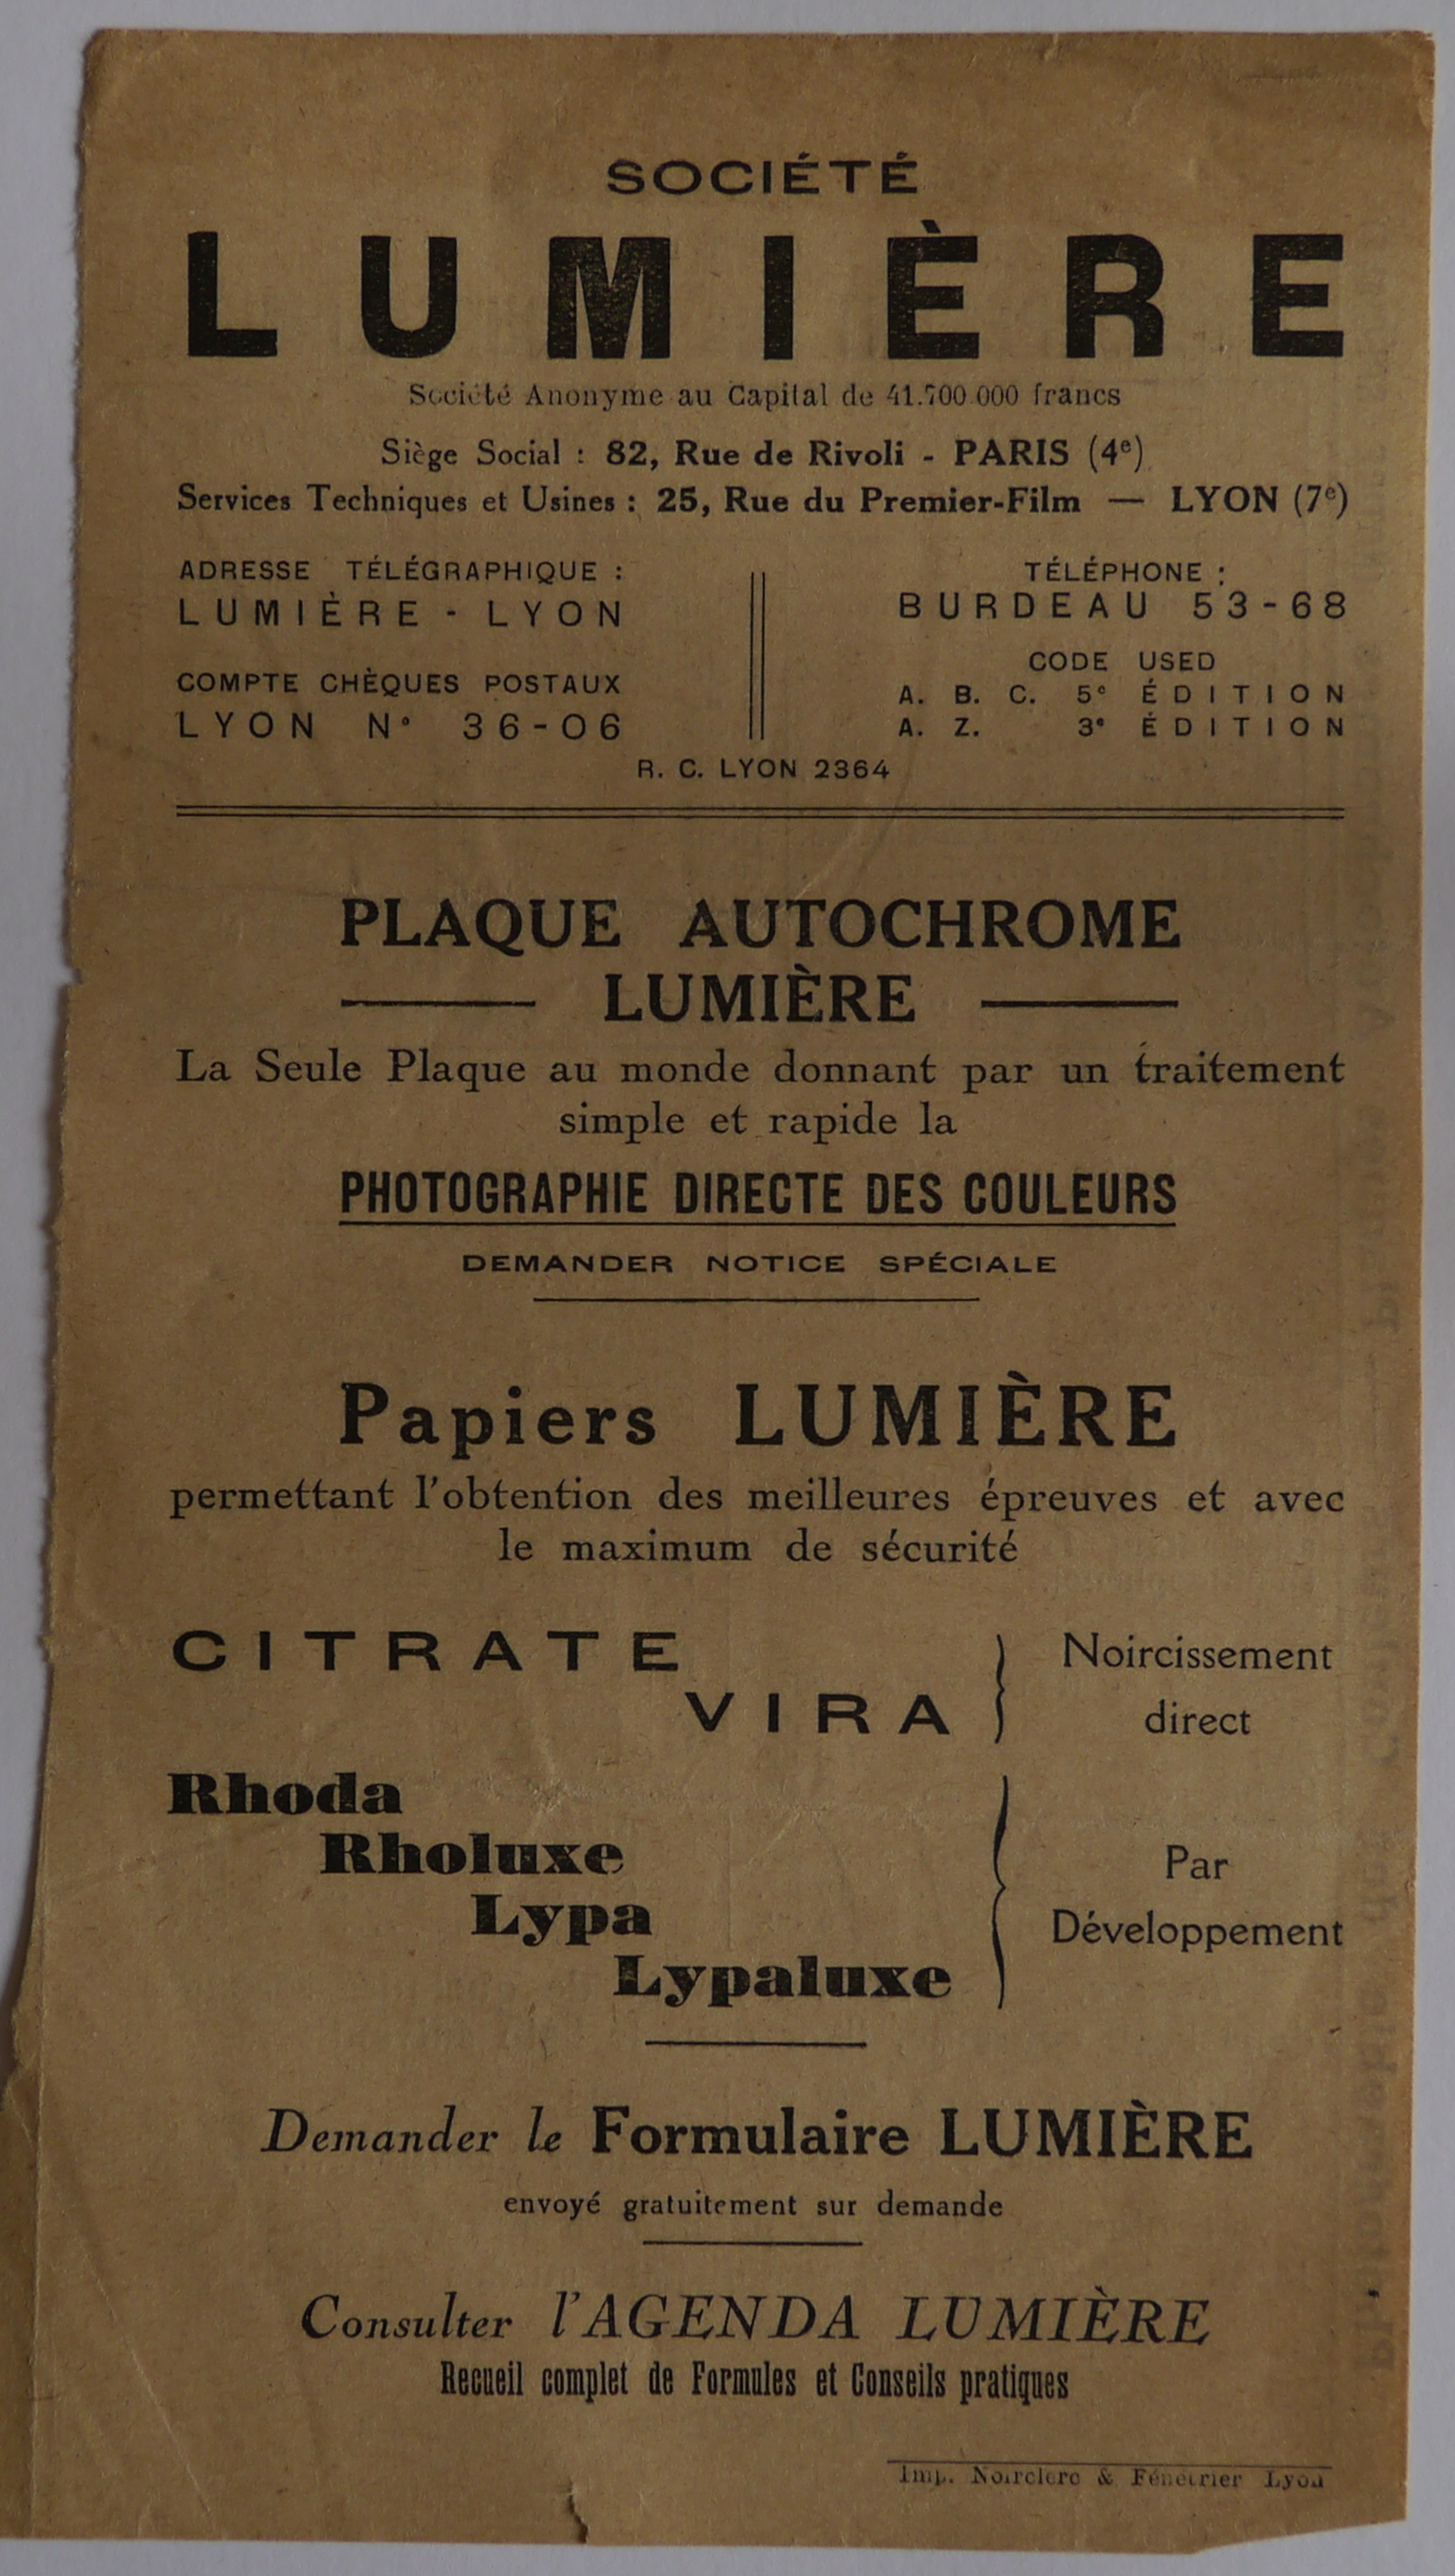 Société Lumière - Notice Plaques Autochrome et Papiers Lumière